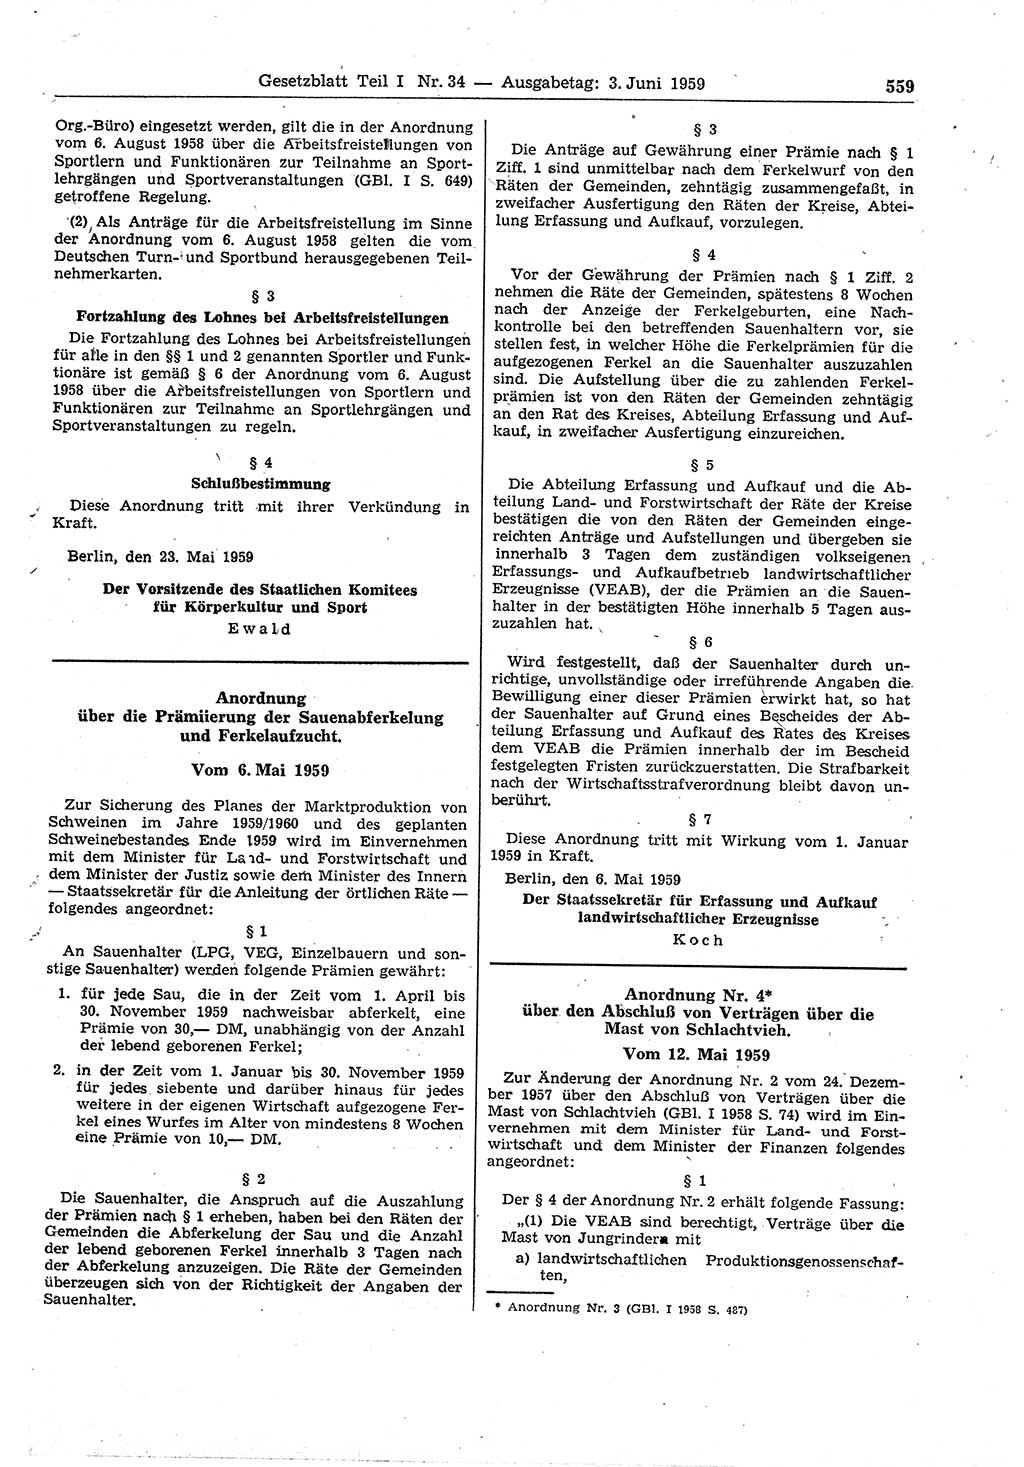 Gesetzblatt (GBl.) der Deutschen Demokratischen Republik (DDR) Teil Ⅰ 1959, Seite 559 (GBl. DDR Ⅰ 1959, S. 559)